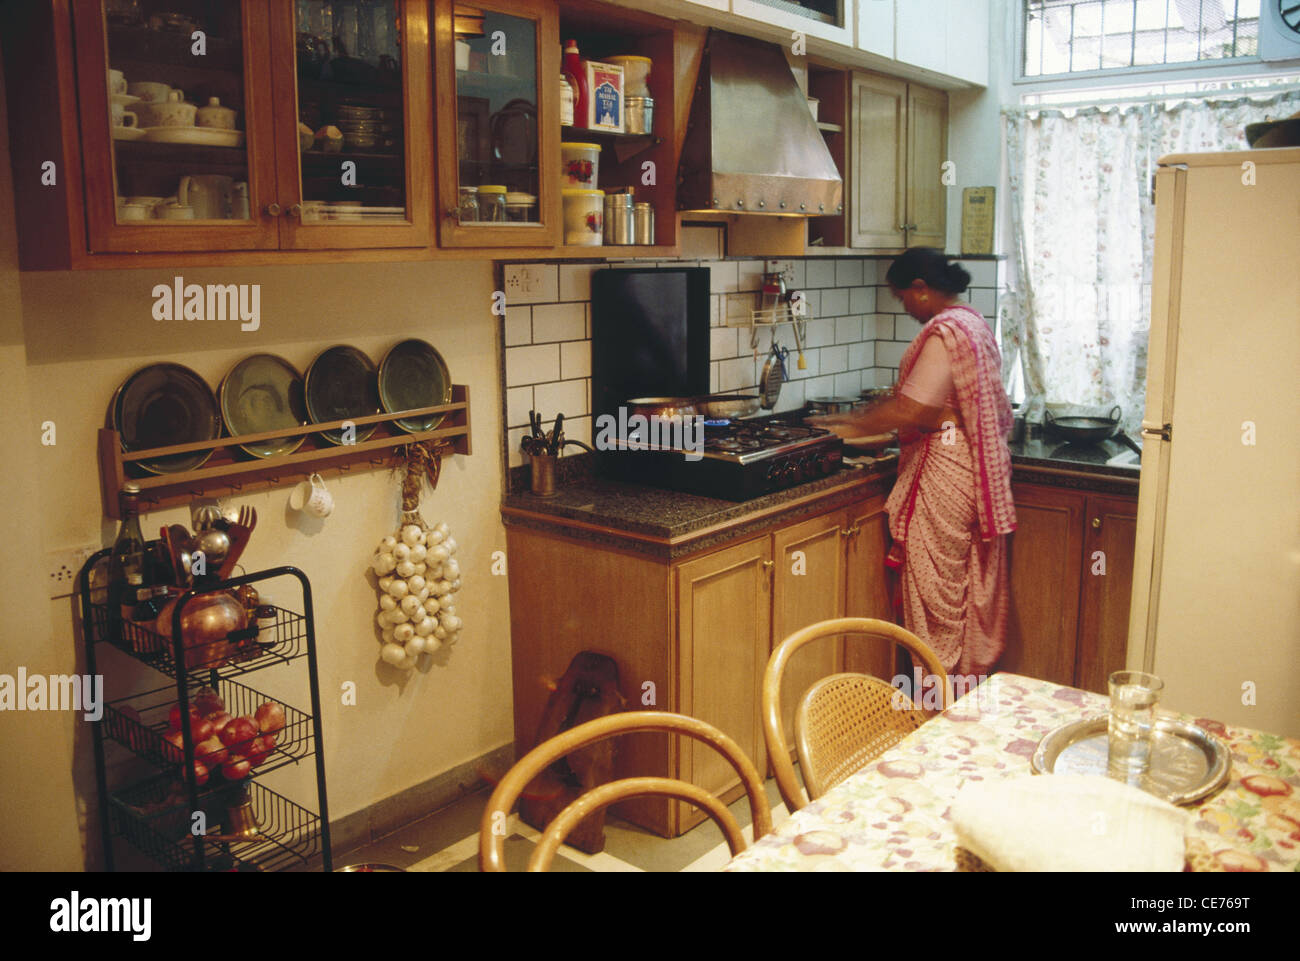 Cuisine indienne ; femme cuisine dans la cuisine familiale de classe moyenne supérieure ; maharashtra ; inde ; asie Banque D'Images